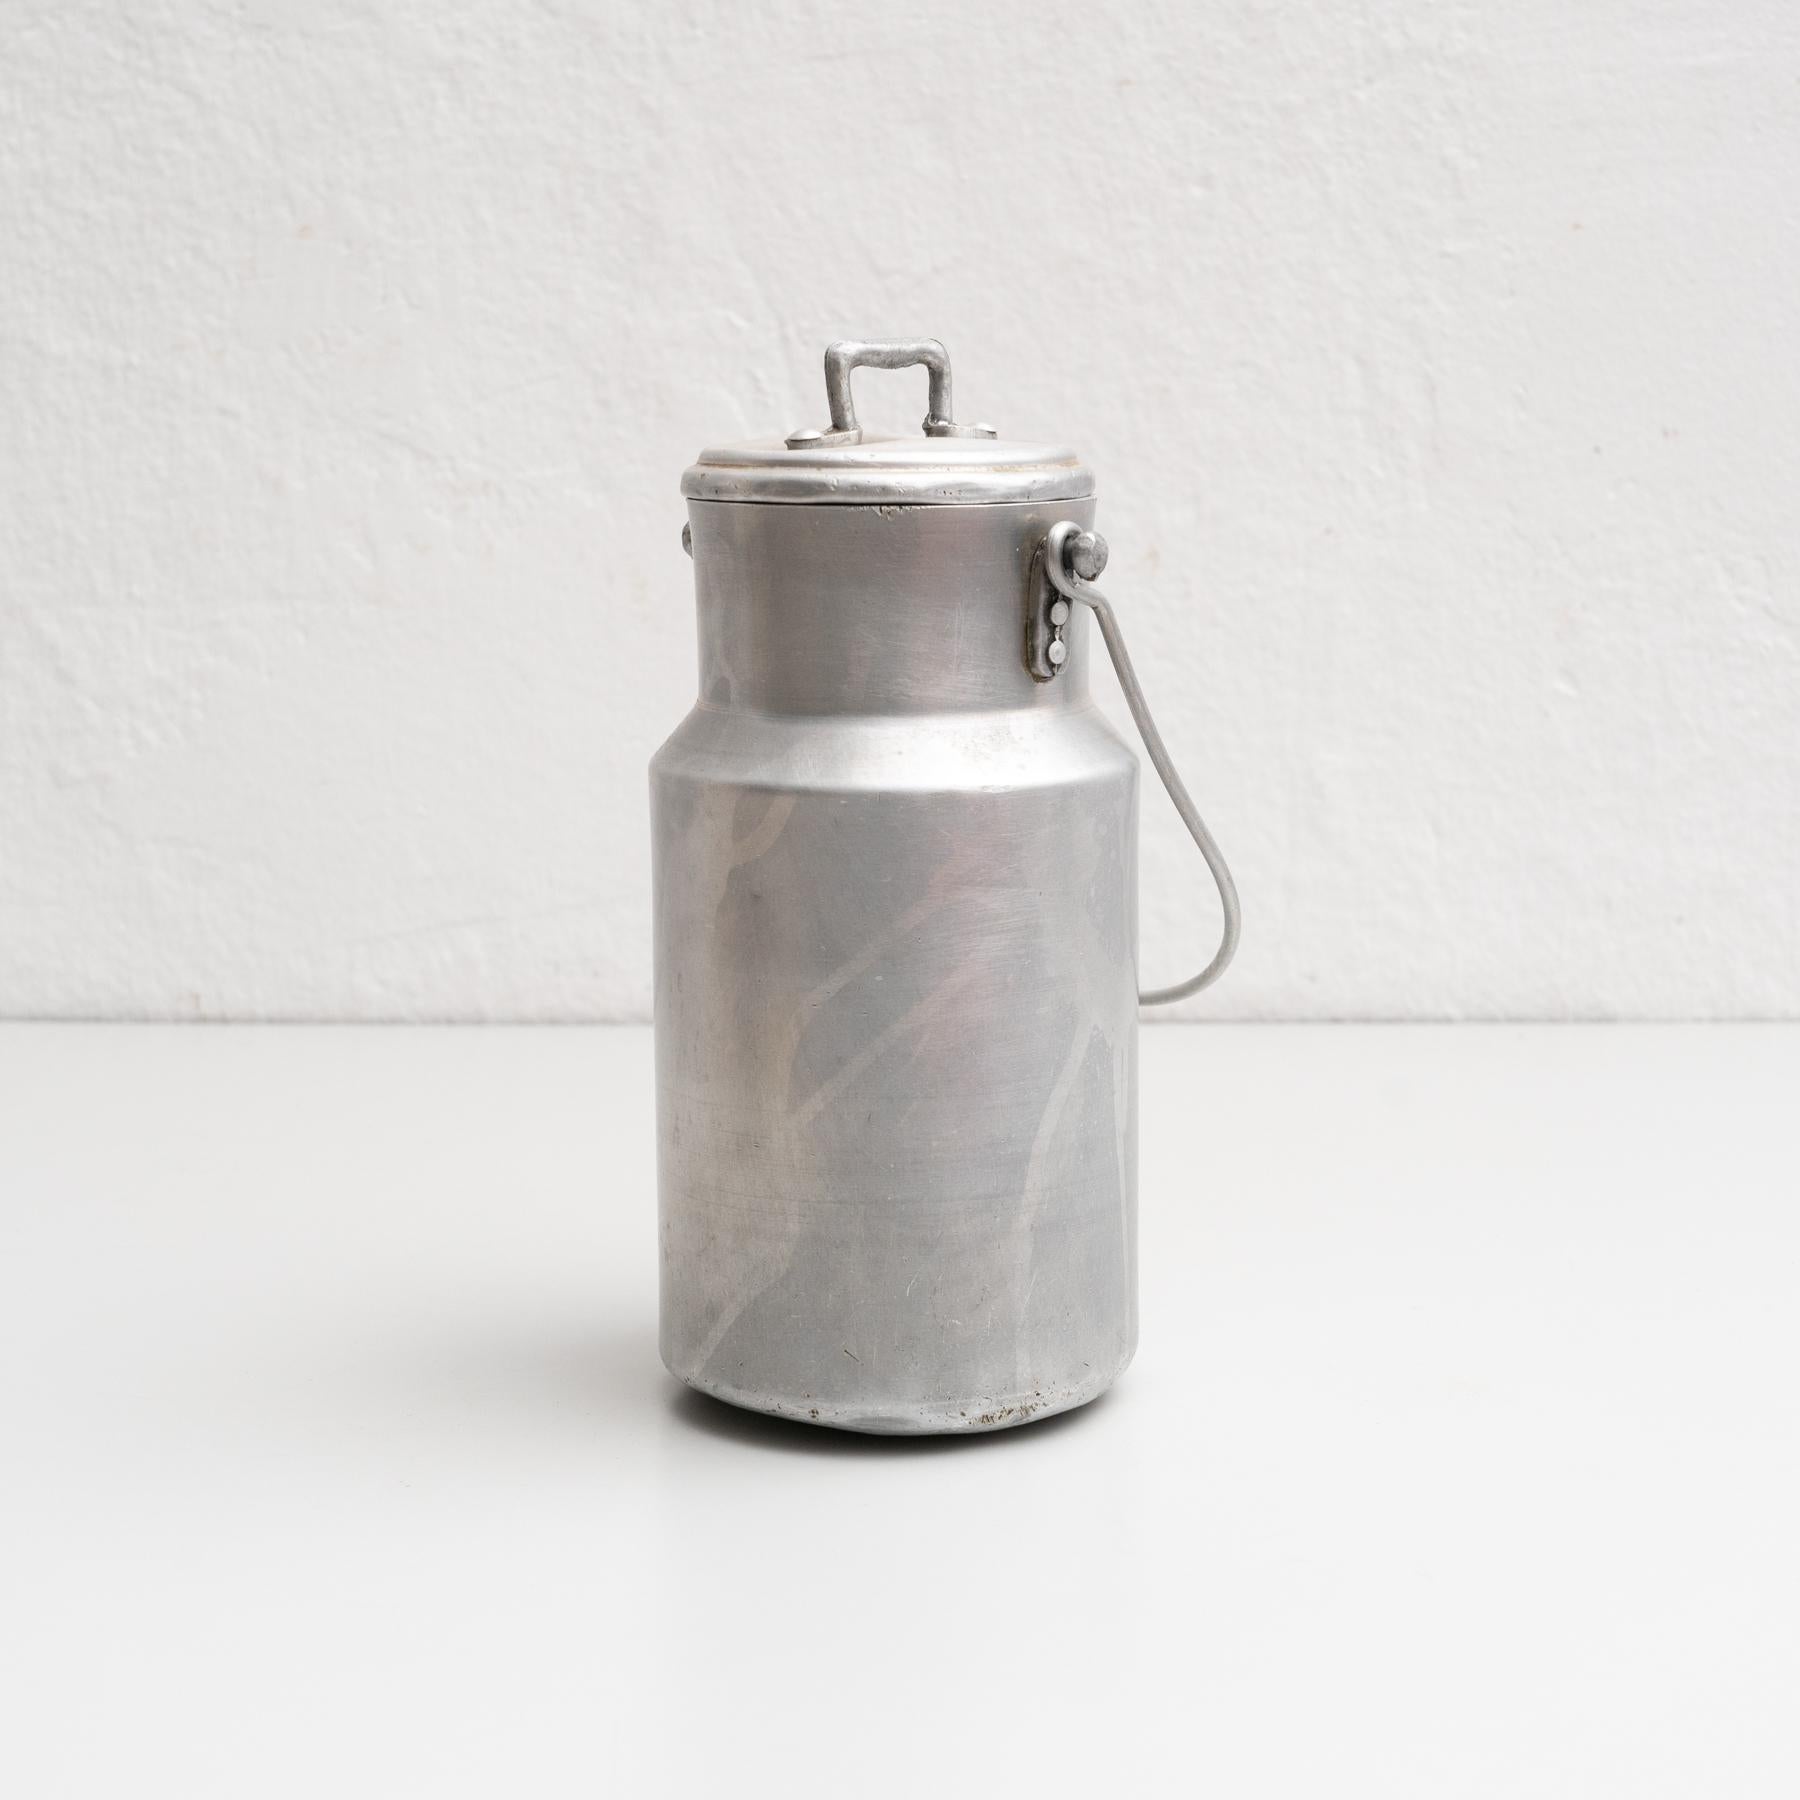 Pot à lait vintage en métal avec couvercle et poignée.

Fabricant inconnu, fabriqué en Espagne vers 1950.

En état d'origine, avec une usure mineure conforme à l'âge et à l'utilisation, préservant une belle patine.

Matériaux :
Métal.
 